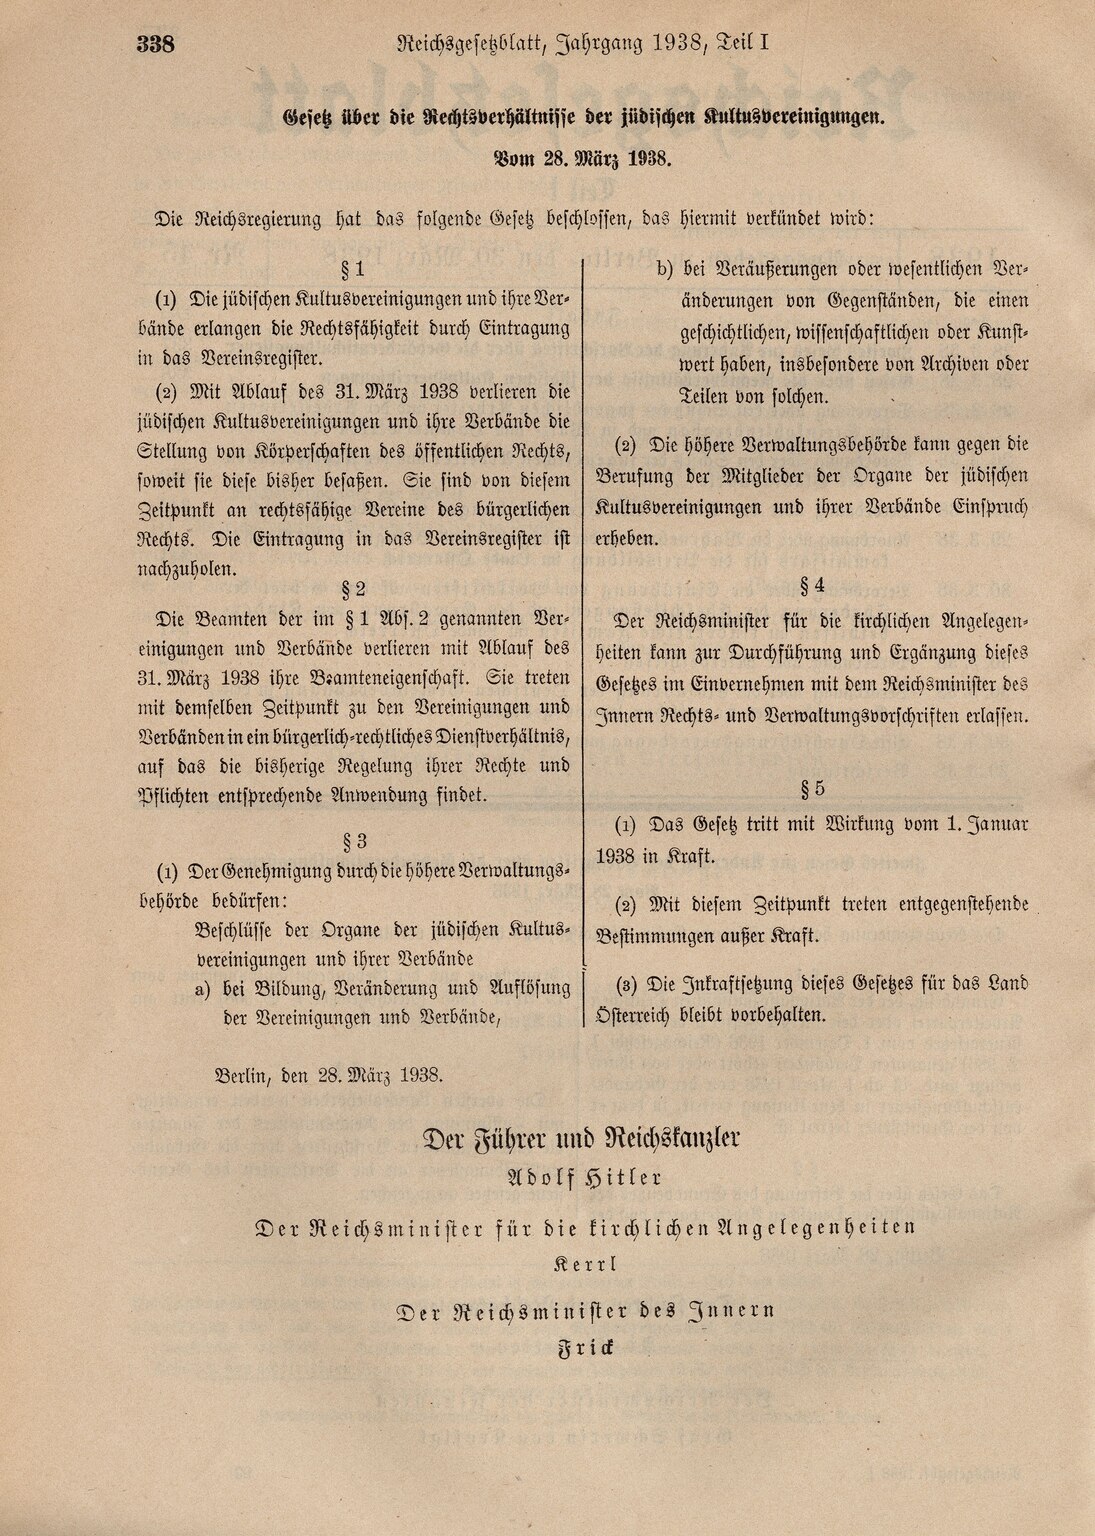 Reichsgesetzblatt 1938, S. 338